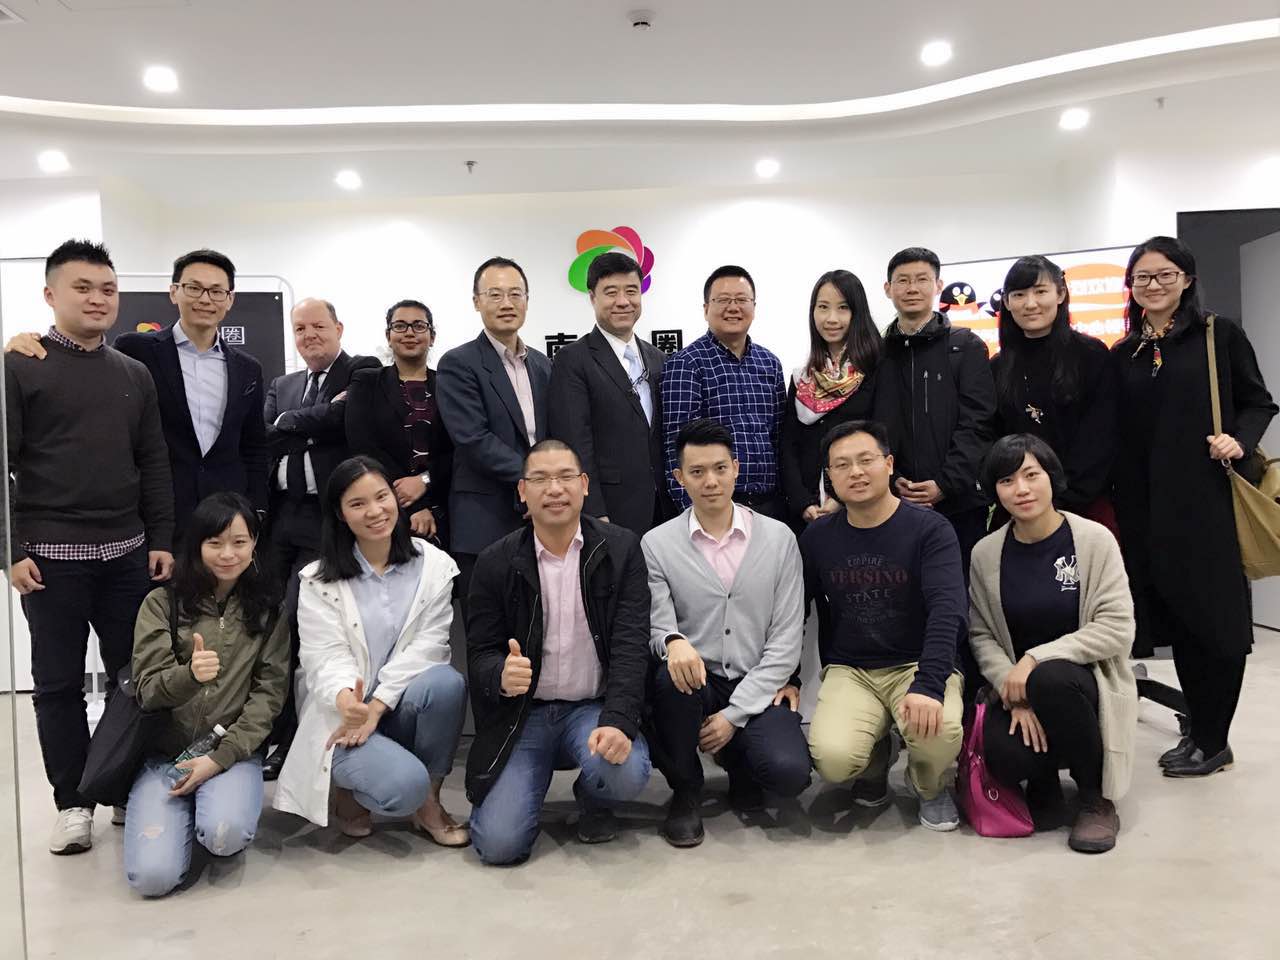 Zhang Yongwei leads survey group to Shenzhen